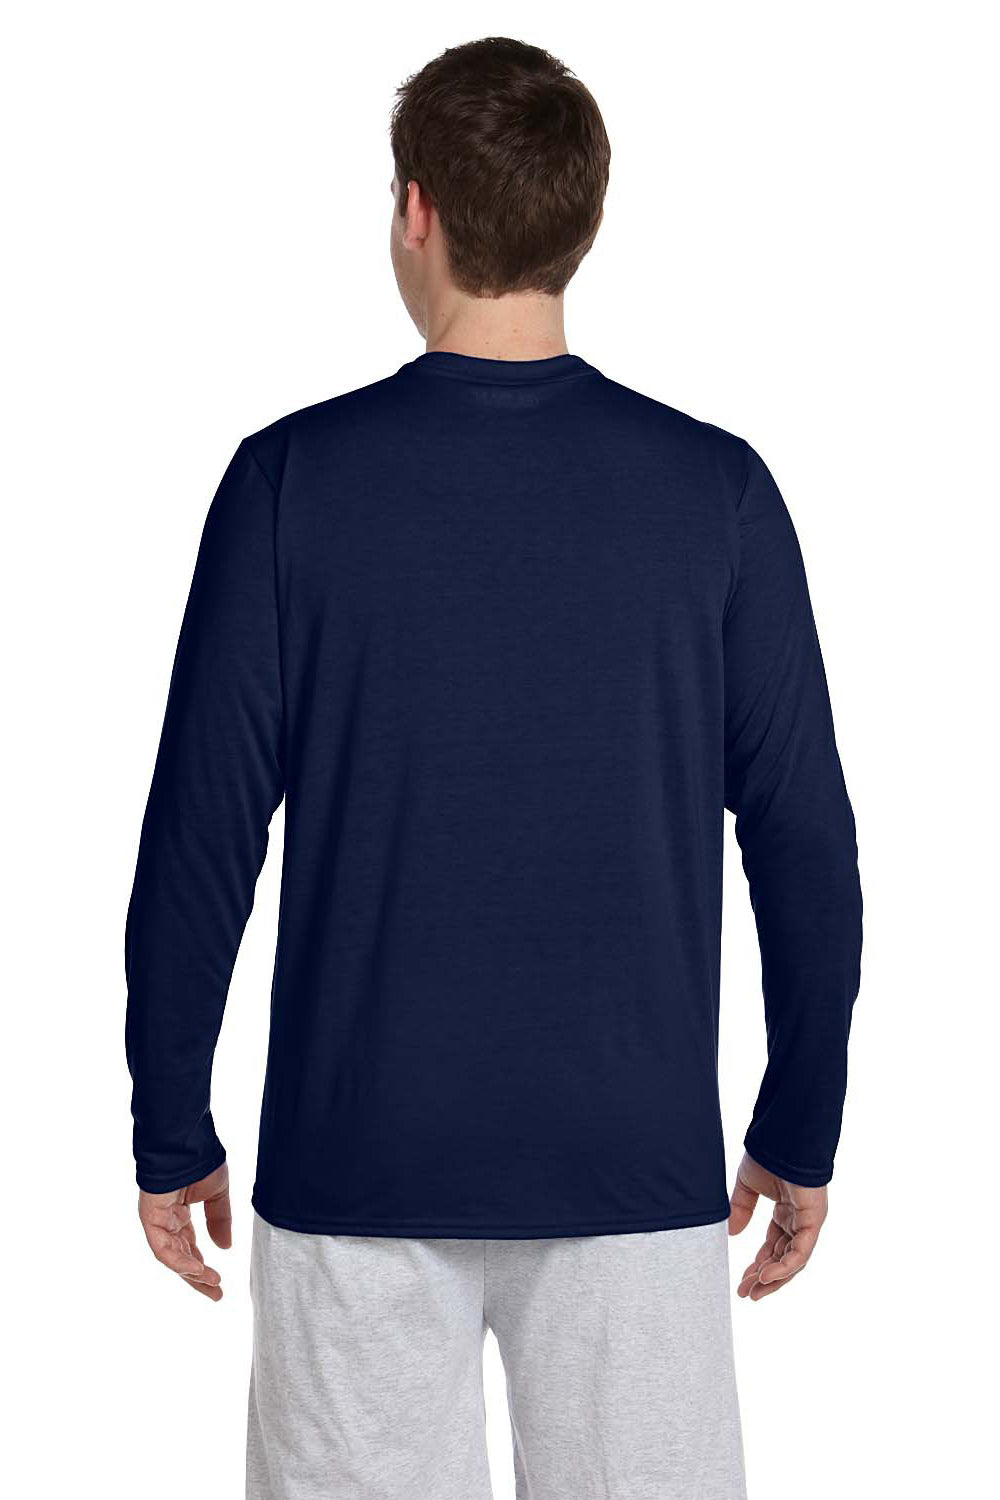 Gildan G424 Mens Performance Jersey Moisture Wicking Long Sleeve Crewneck T-Shirt Navy Blue Back